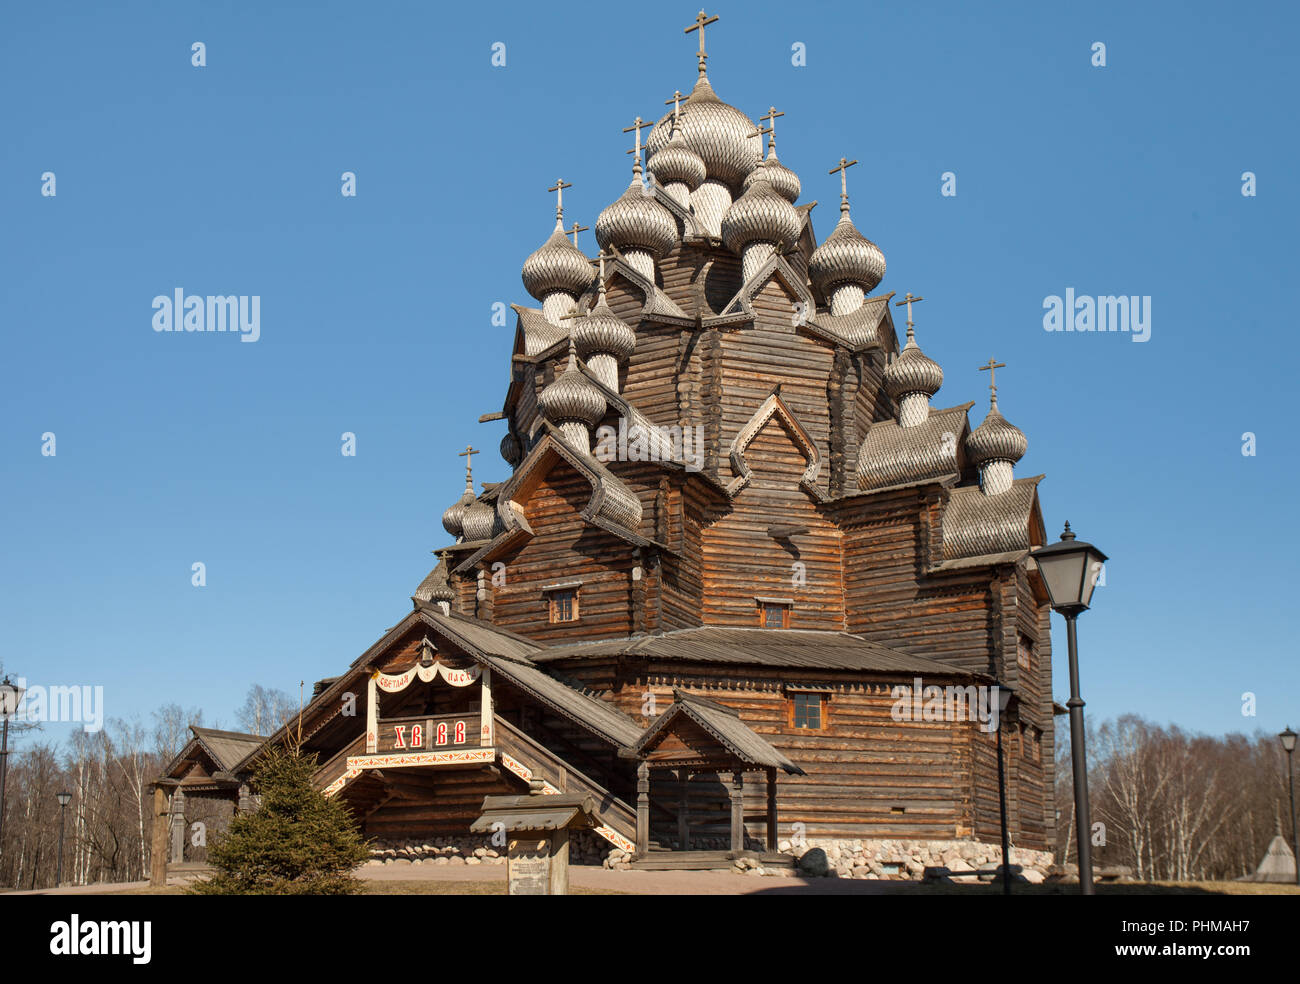 Alte Kirche aus Holz, Holz- Architektur des Russischen Nordens Stockfoto